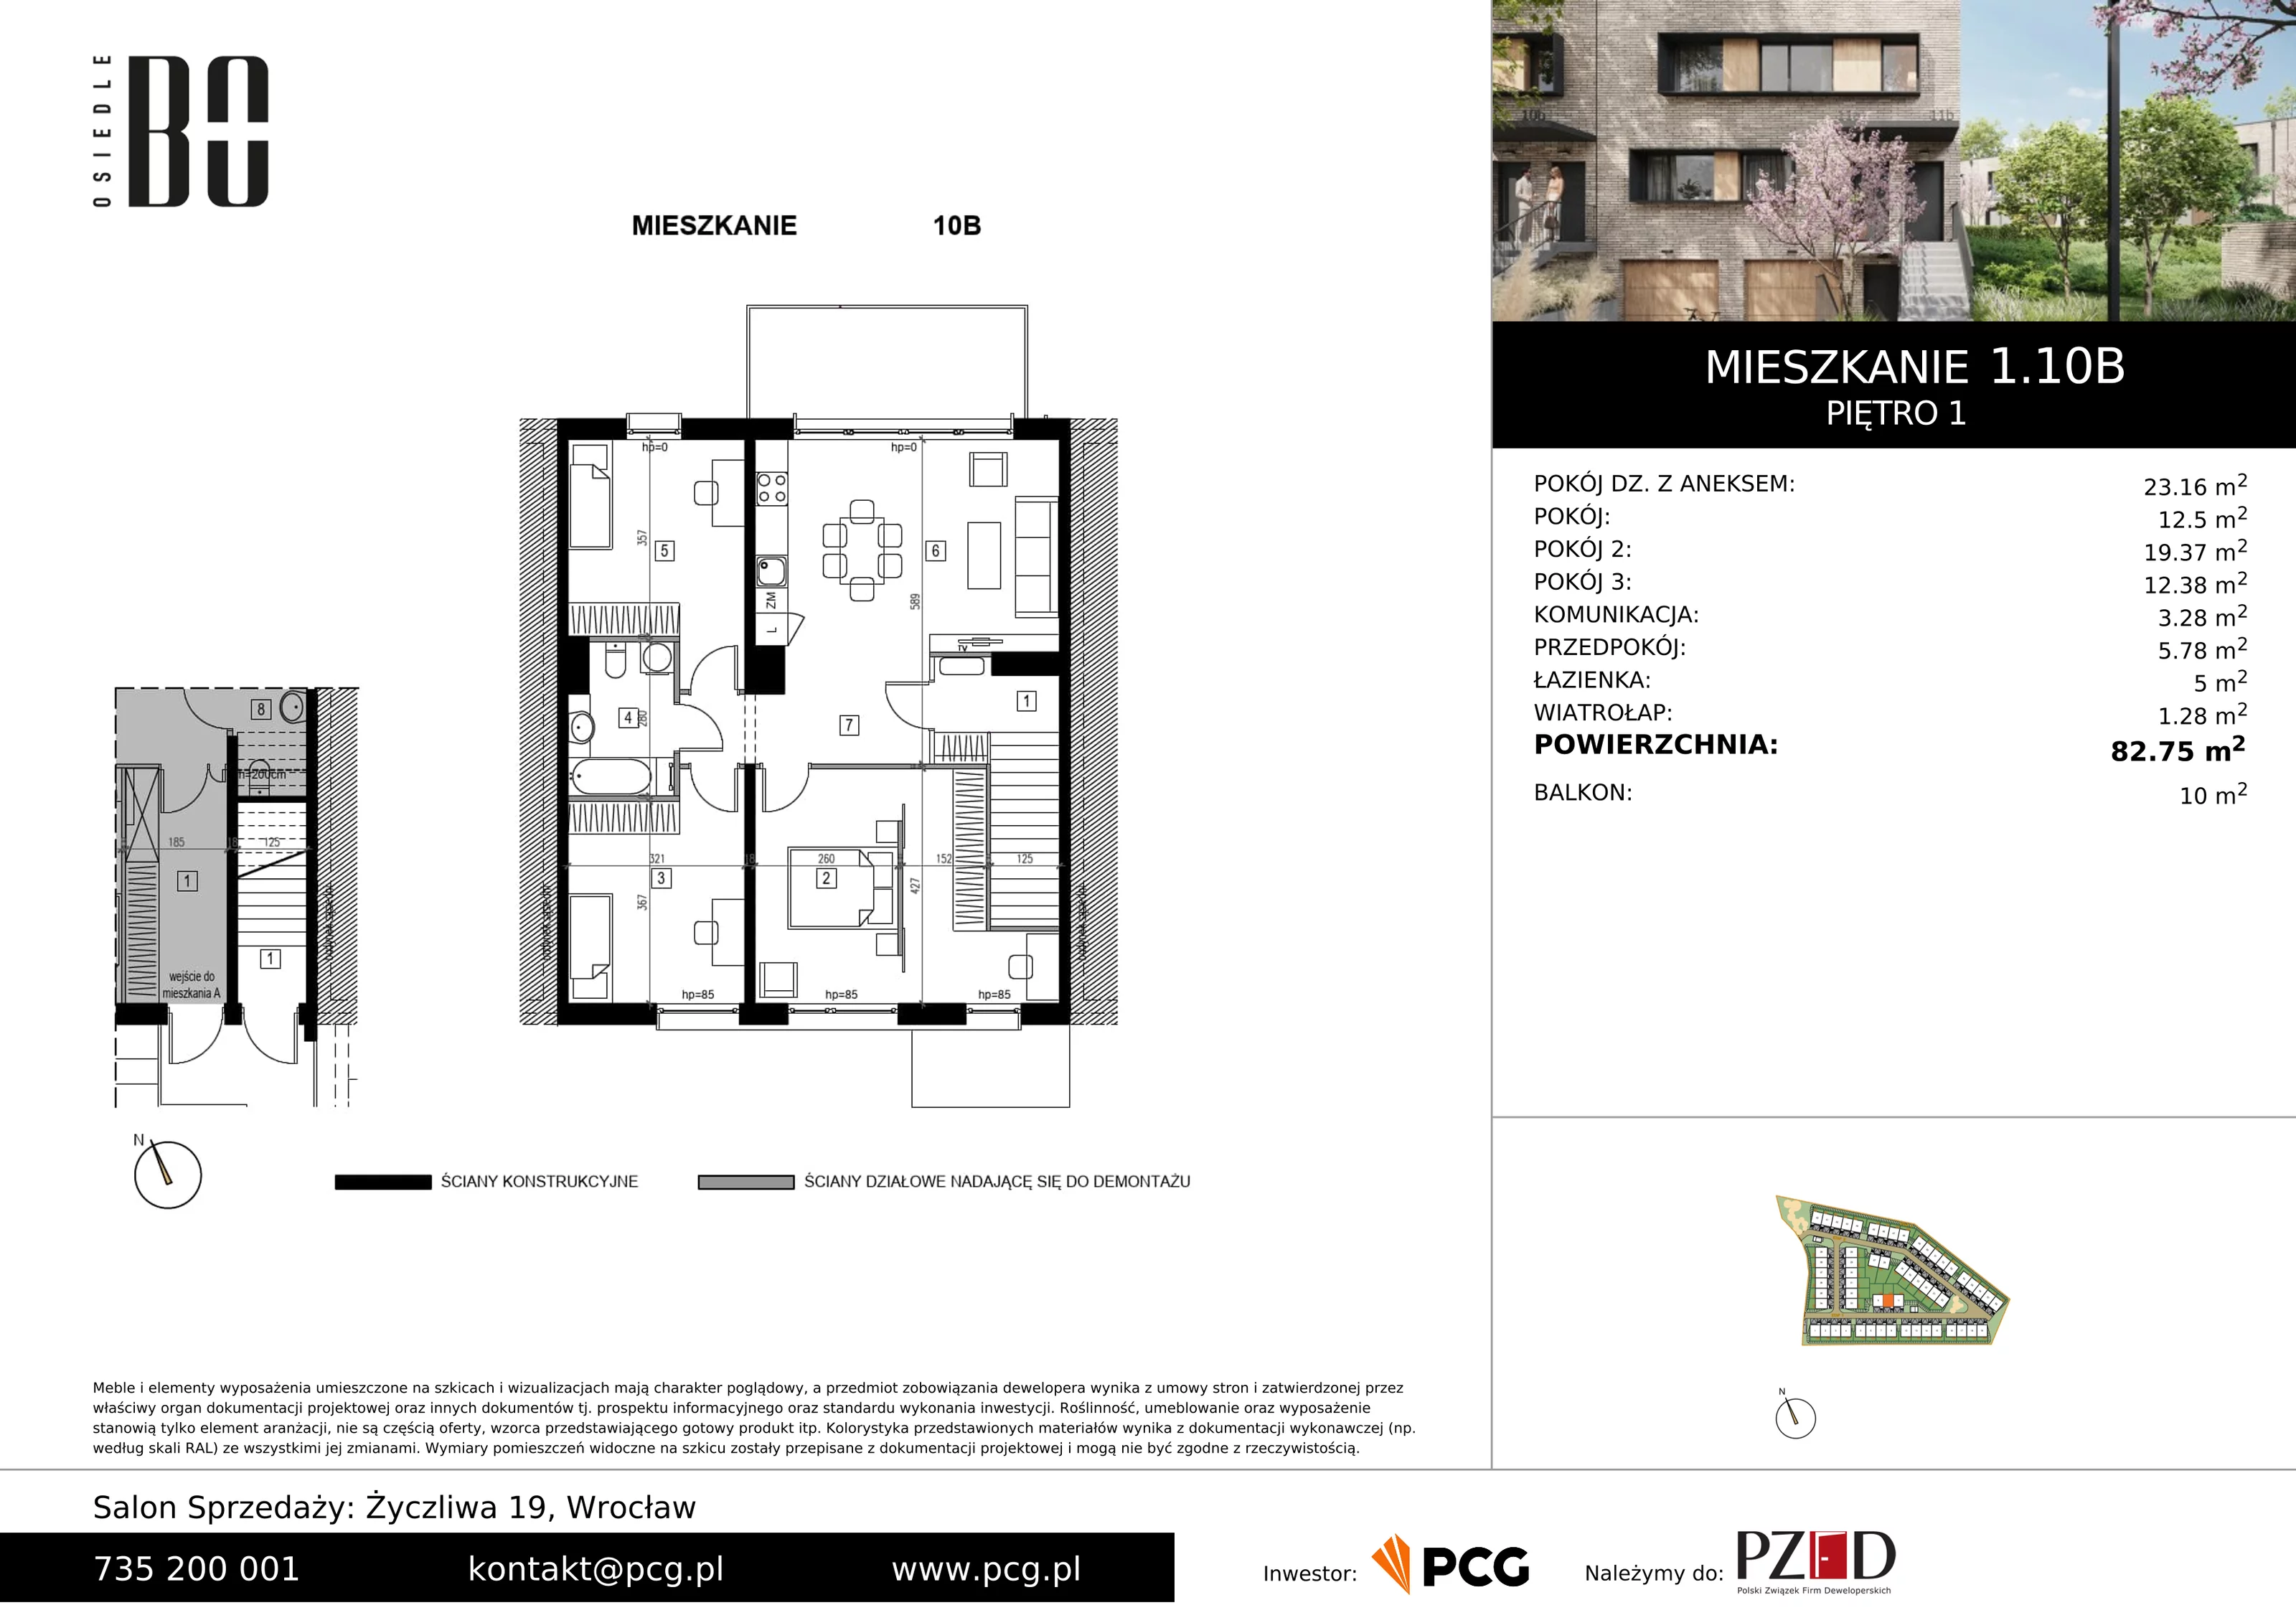 Apartament 82,75 m², piętro 1, oferta nr 1.10B, Osiedle BO, Wrocław, Kowale, ul. Bociana